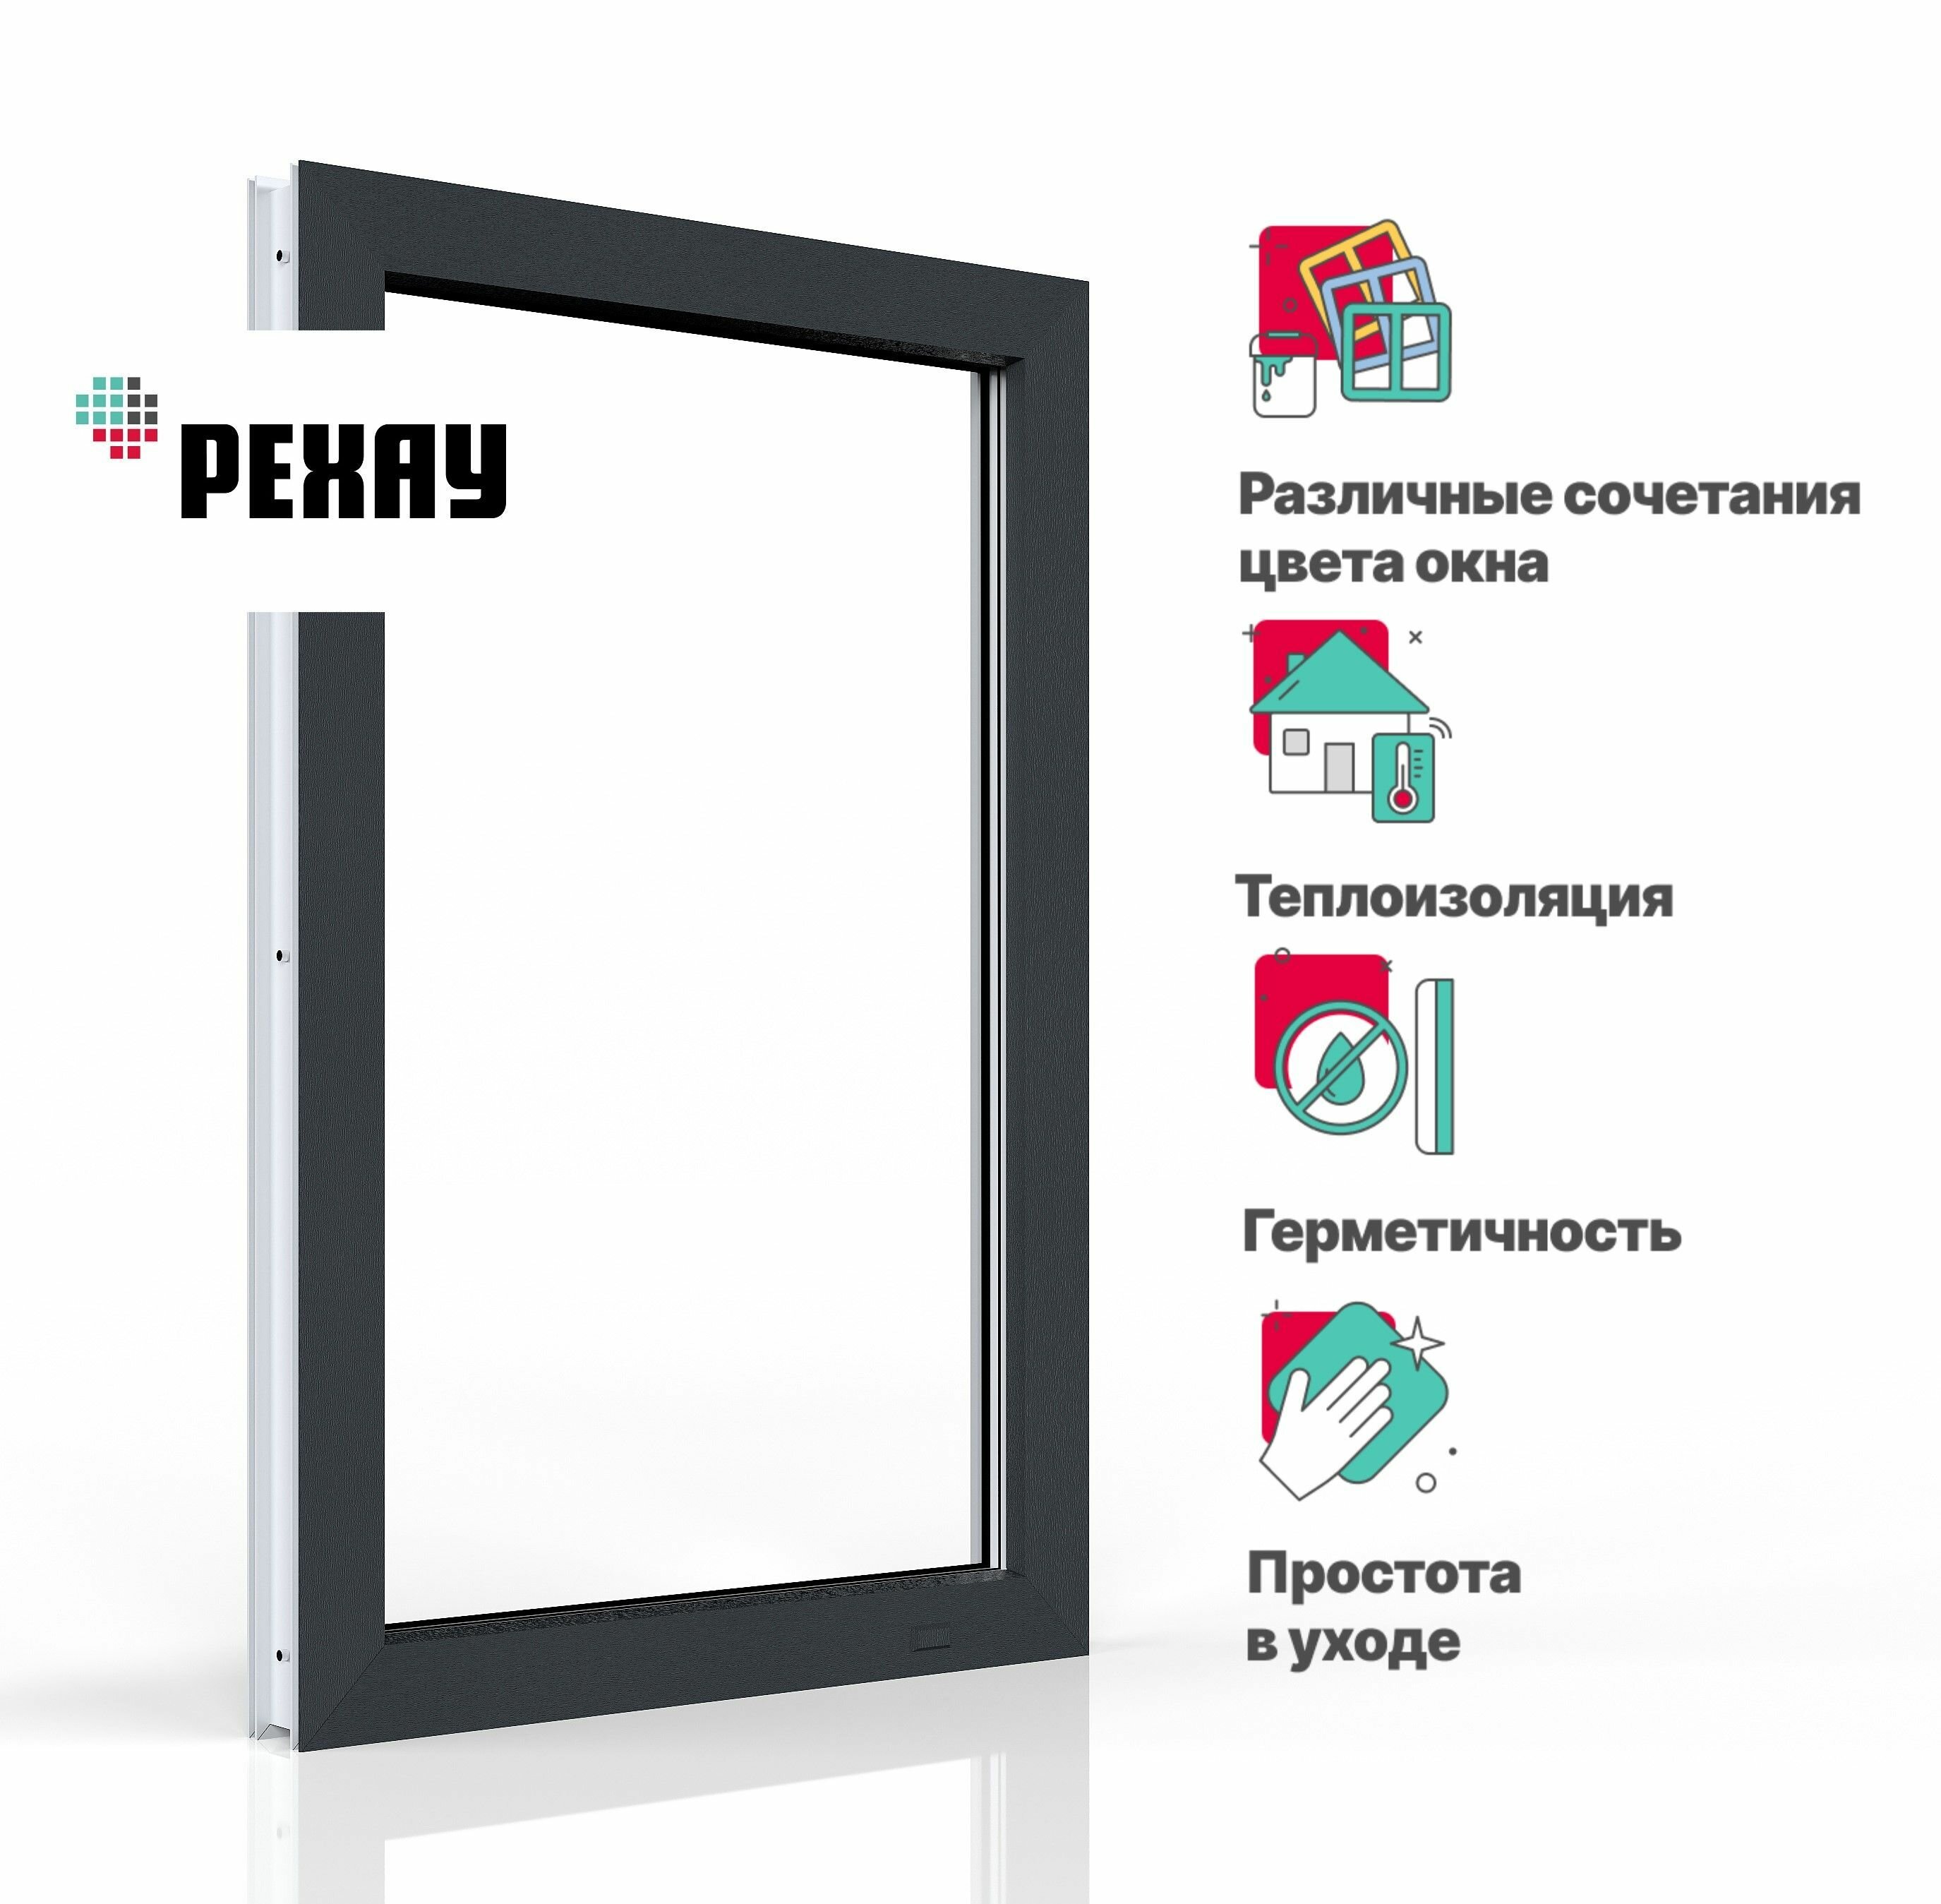 Пластиковое окно ПВХ REHAU BLITZ 800х600 мм (ВхШ) с учетом подставочного профиля глухое двухкамерный стеклопакет темный дуб снаружи